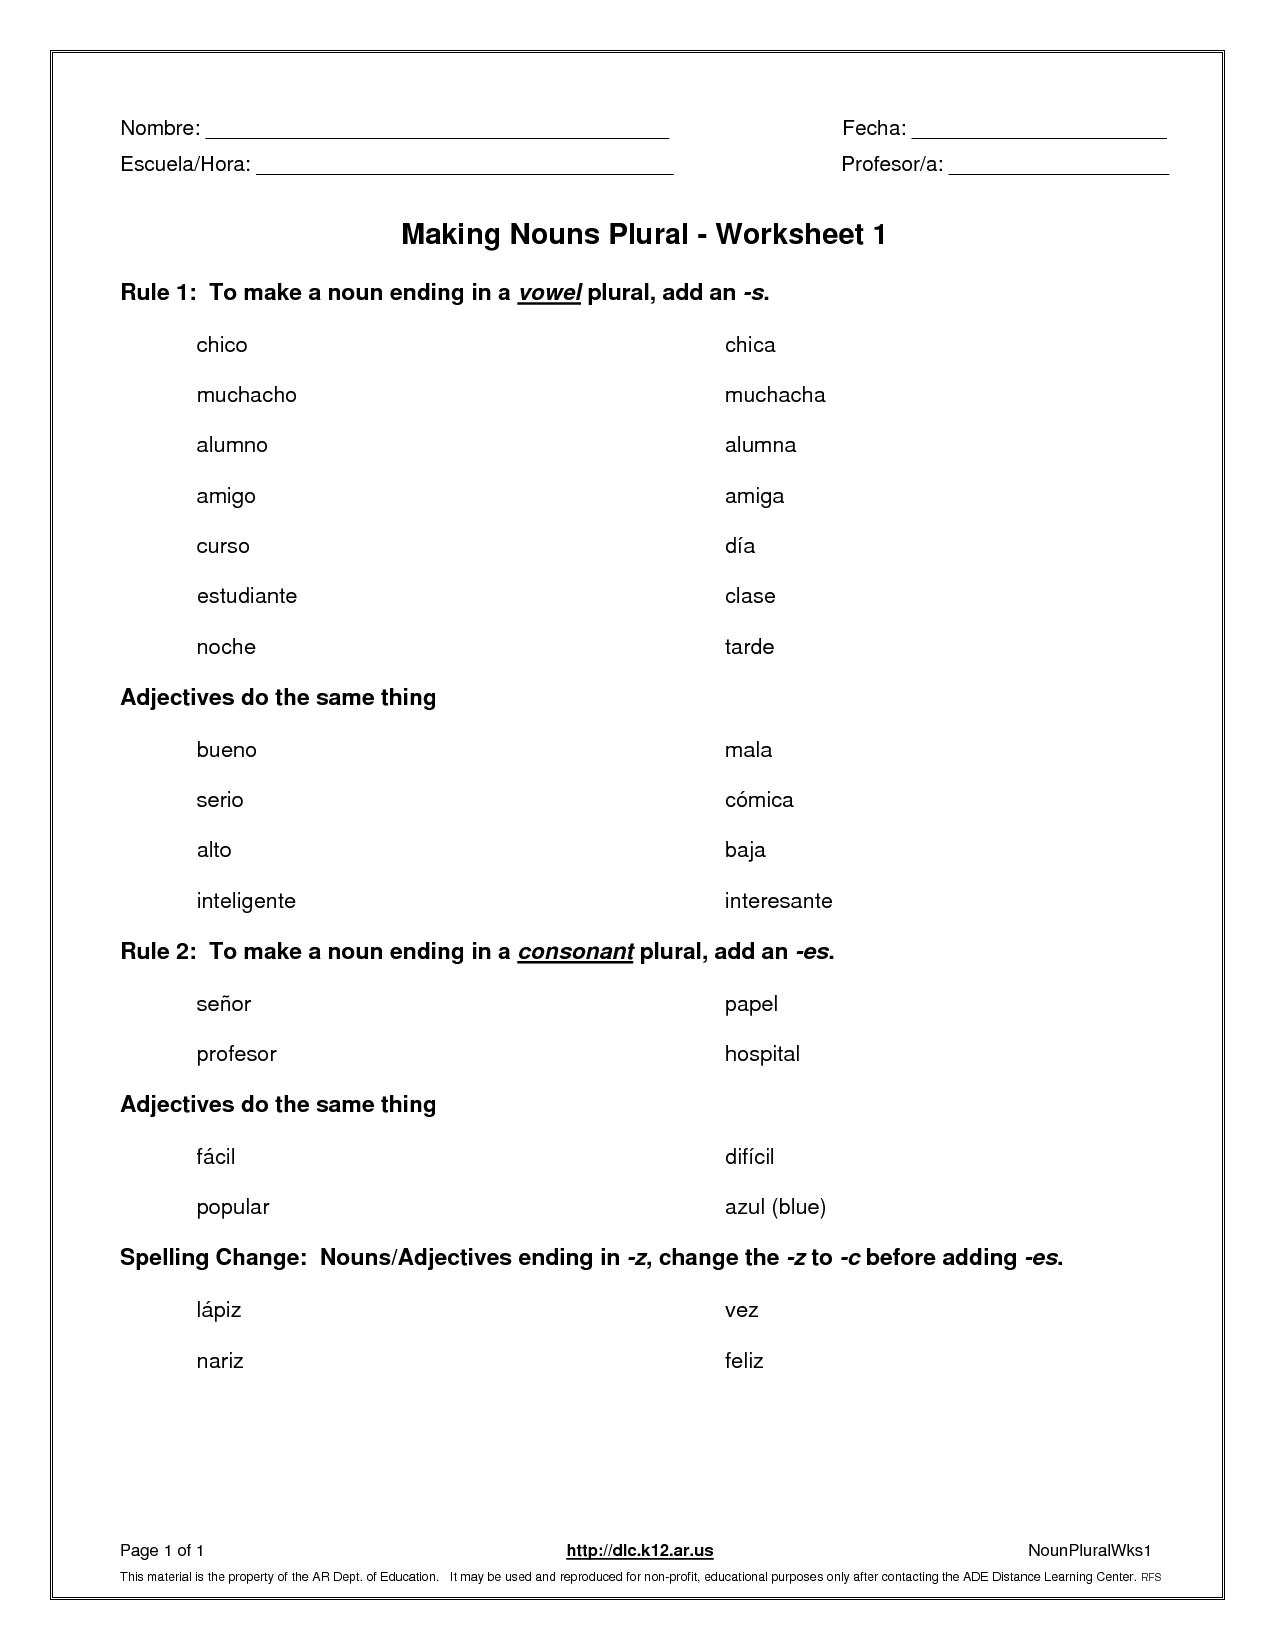 15-best-images-of-possessive-nouns-worksheets-5th-grade-singular